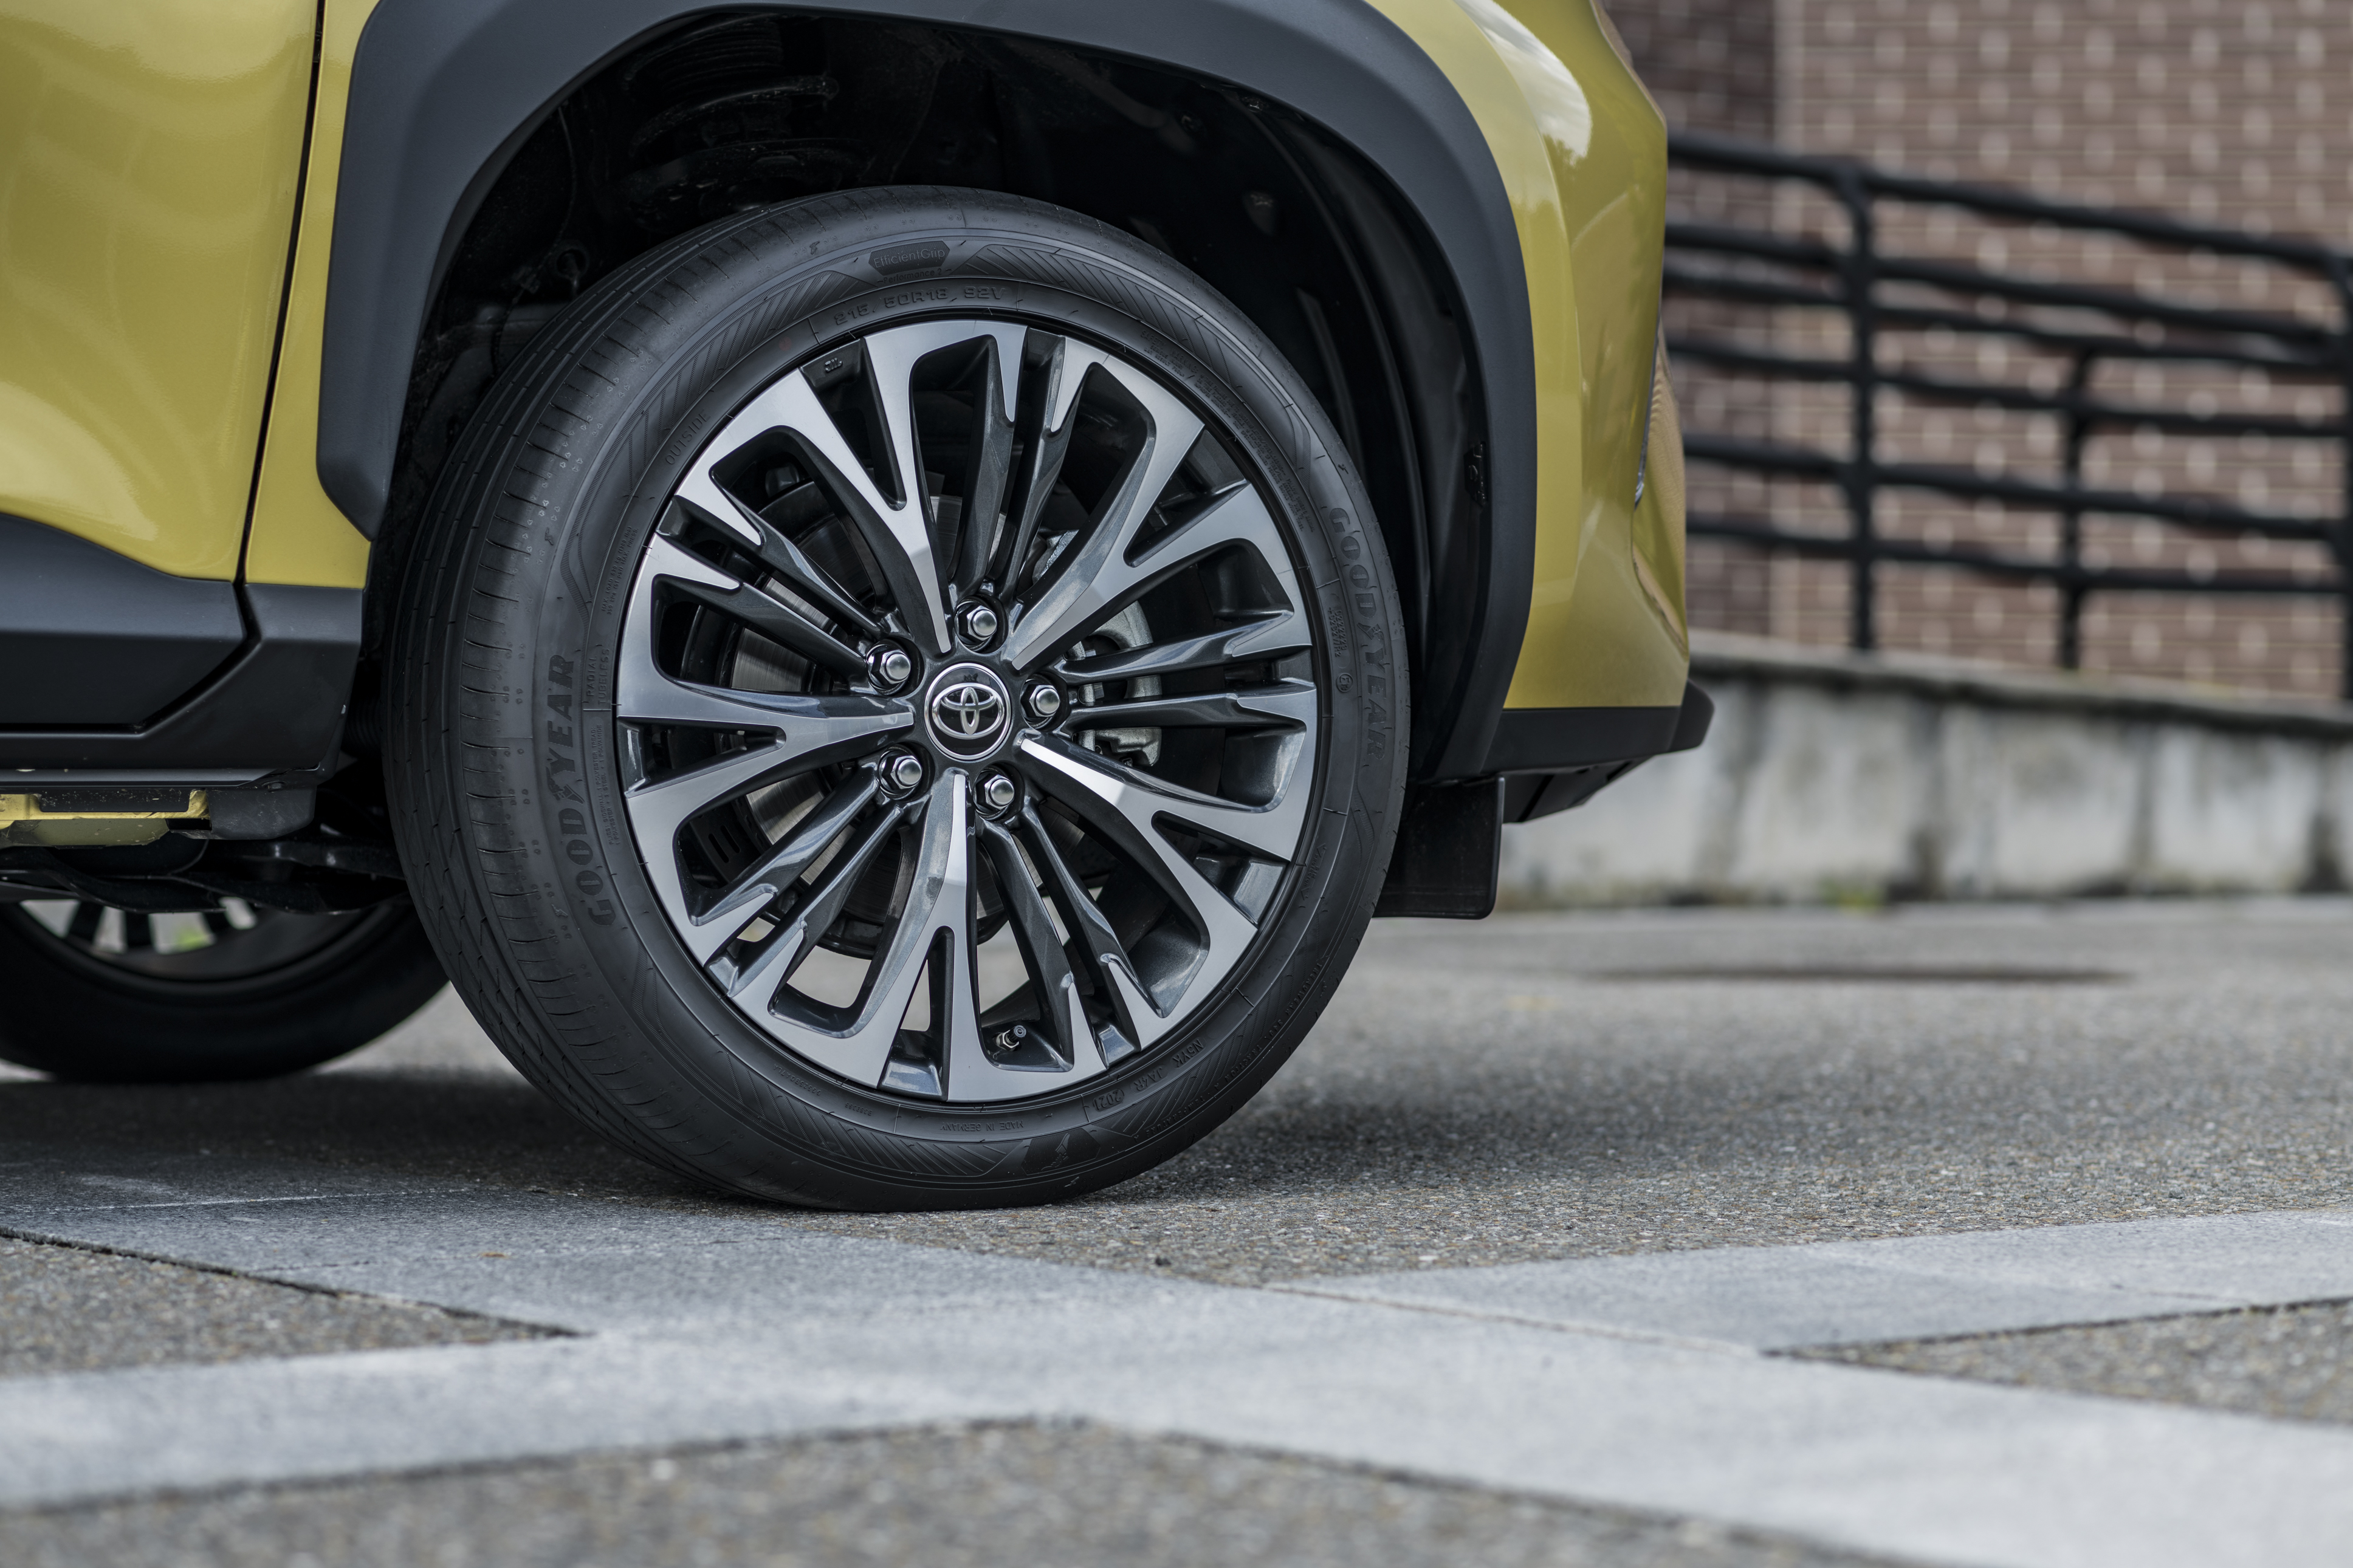 Verificar a pressão dos pneus para evitar perda de aderência ao piso é uma forma de ajudar a poupar combustível.